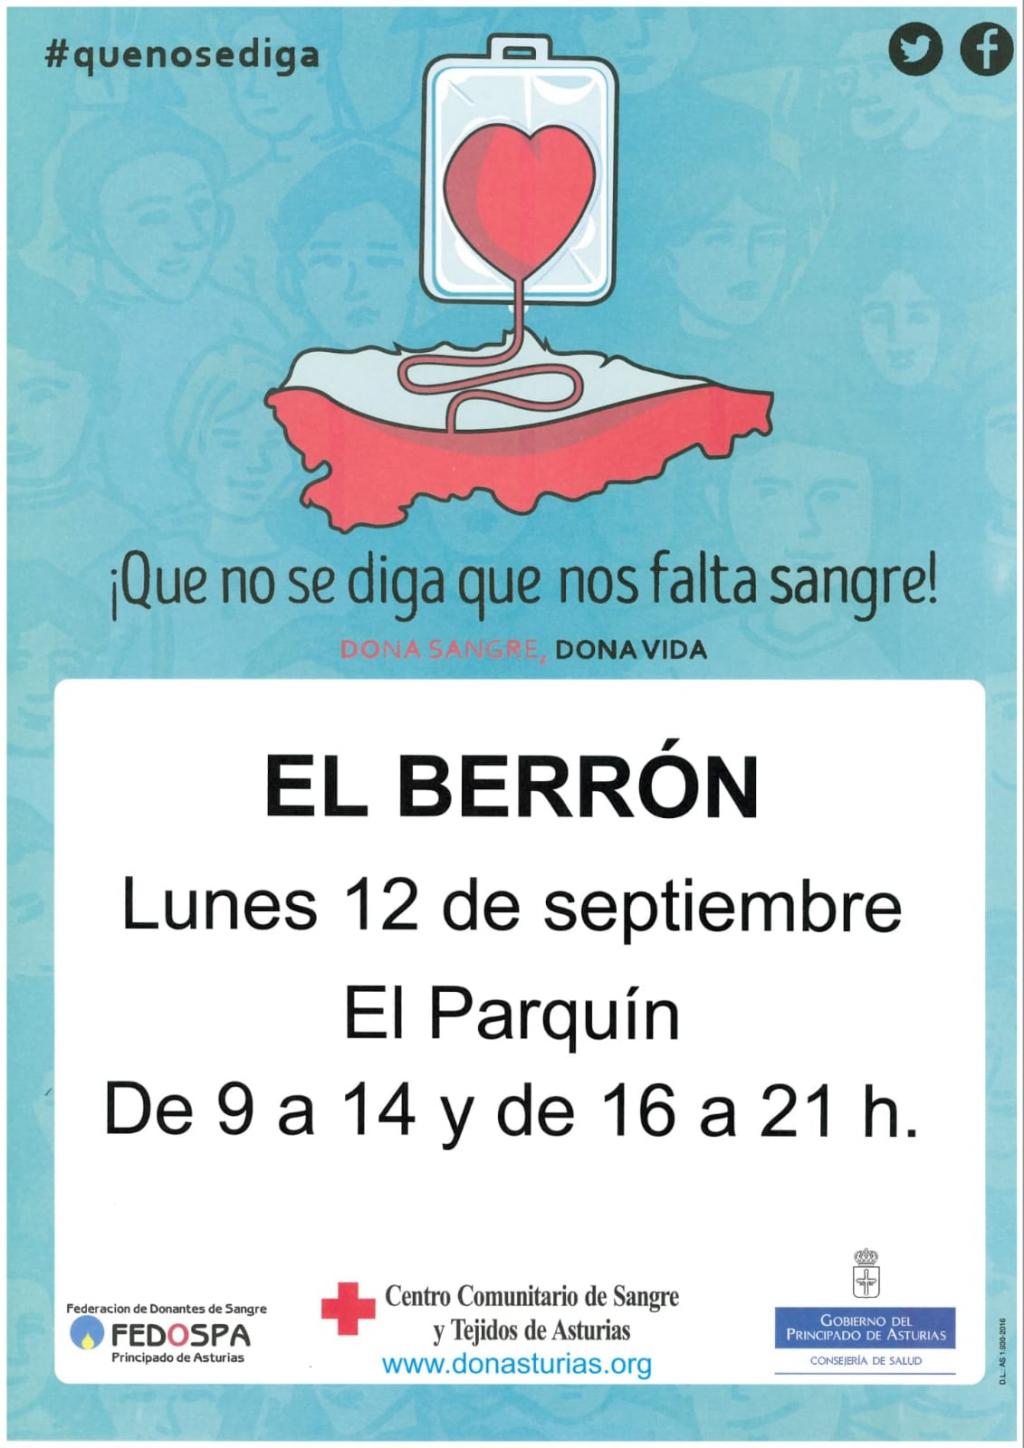 El Tapin - El autobús para donar sangre estará en El Parquín en El Berrón el lunes 12 de septiembre